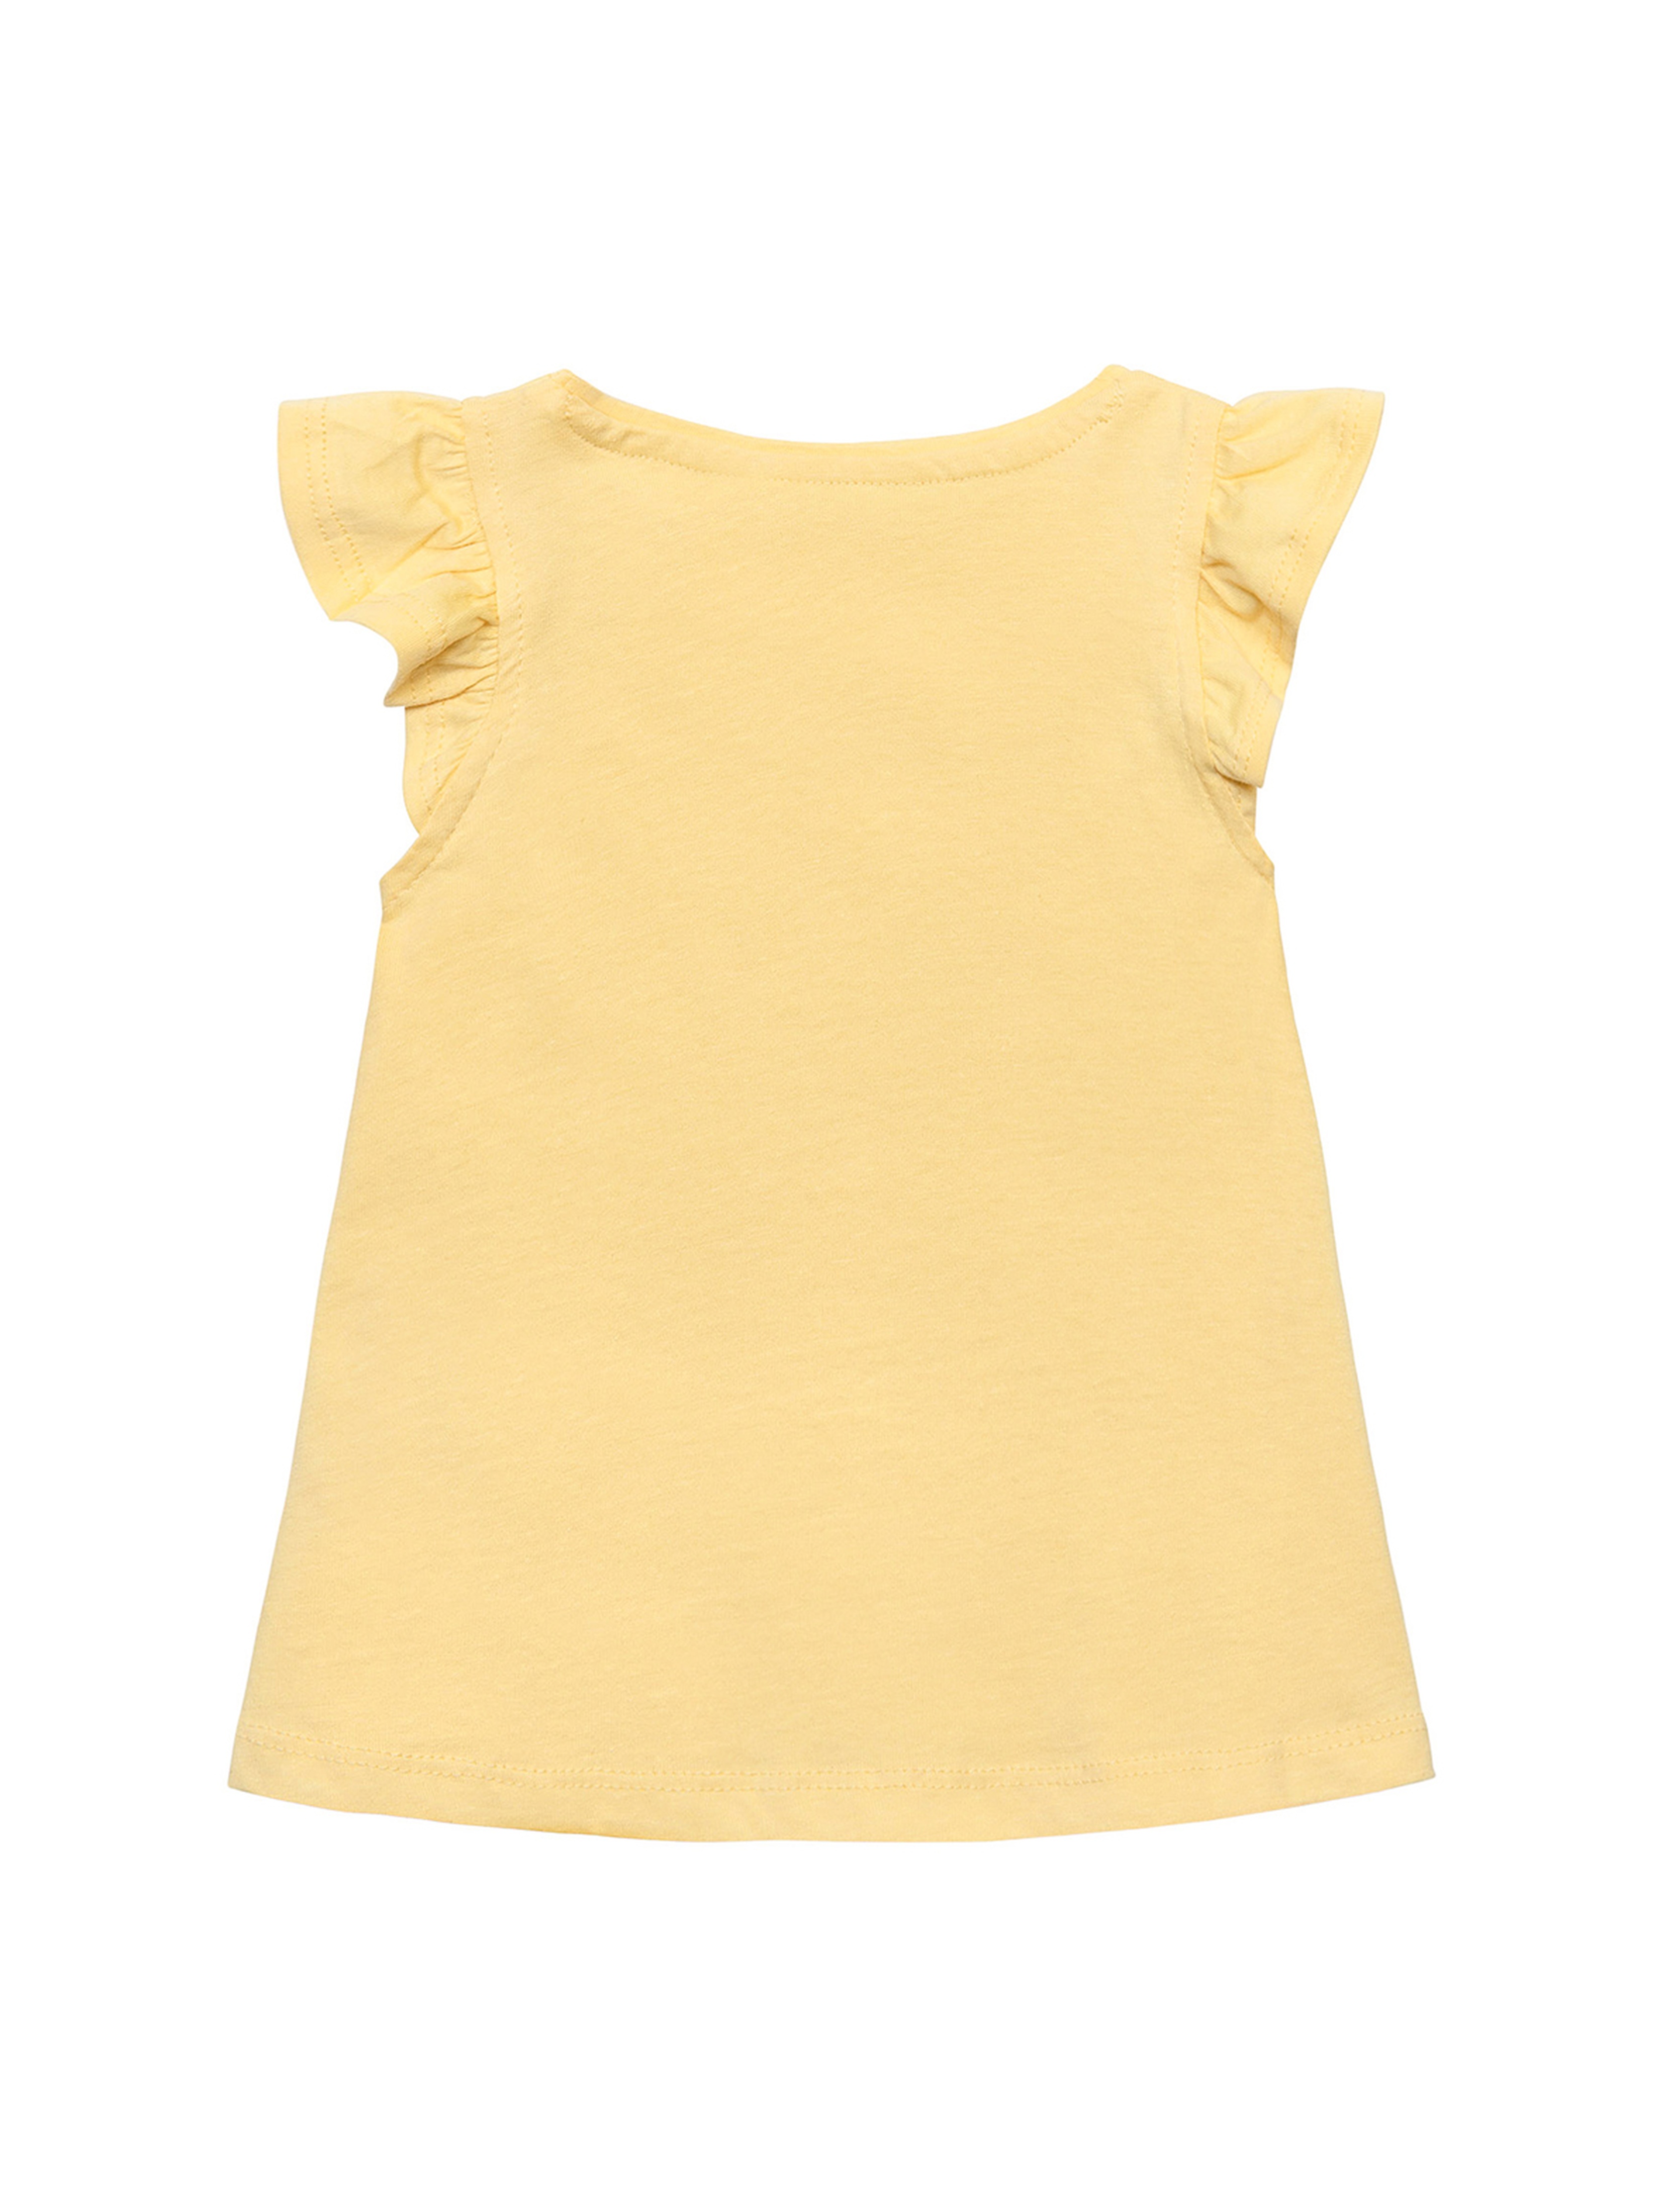 Żółta bluzka bawełniana dziewczęca z falbankami